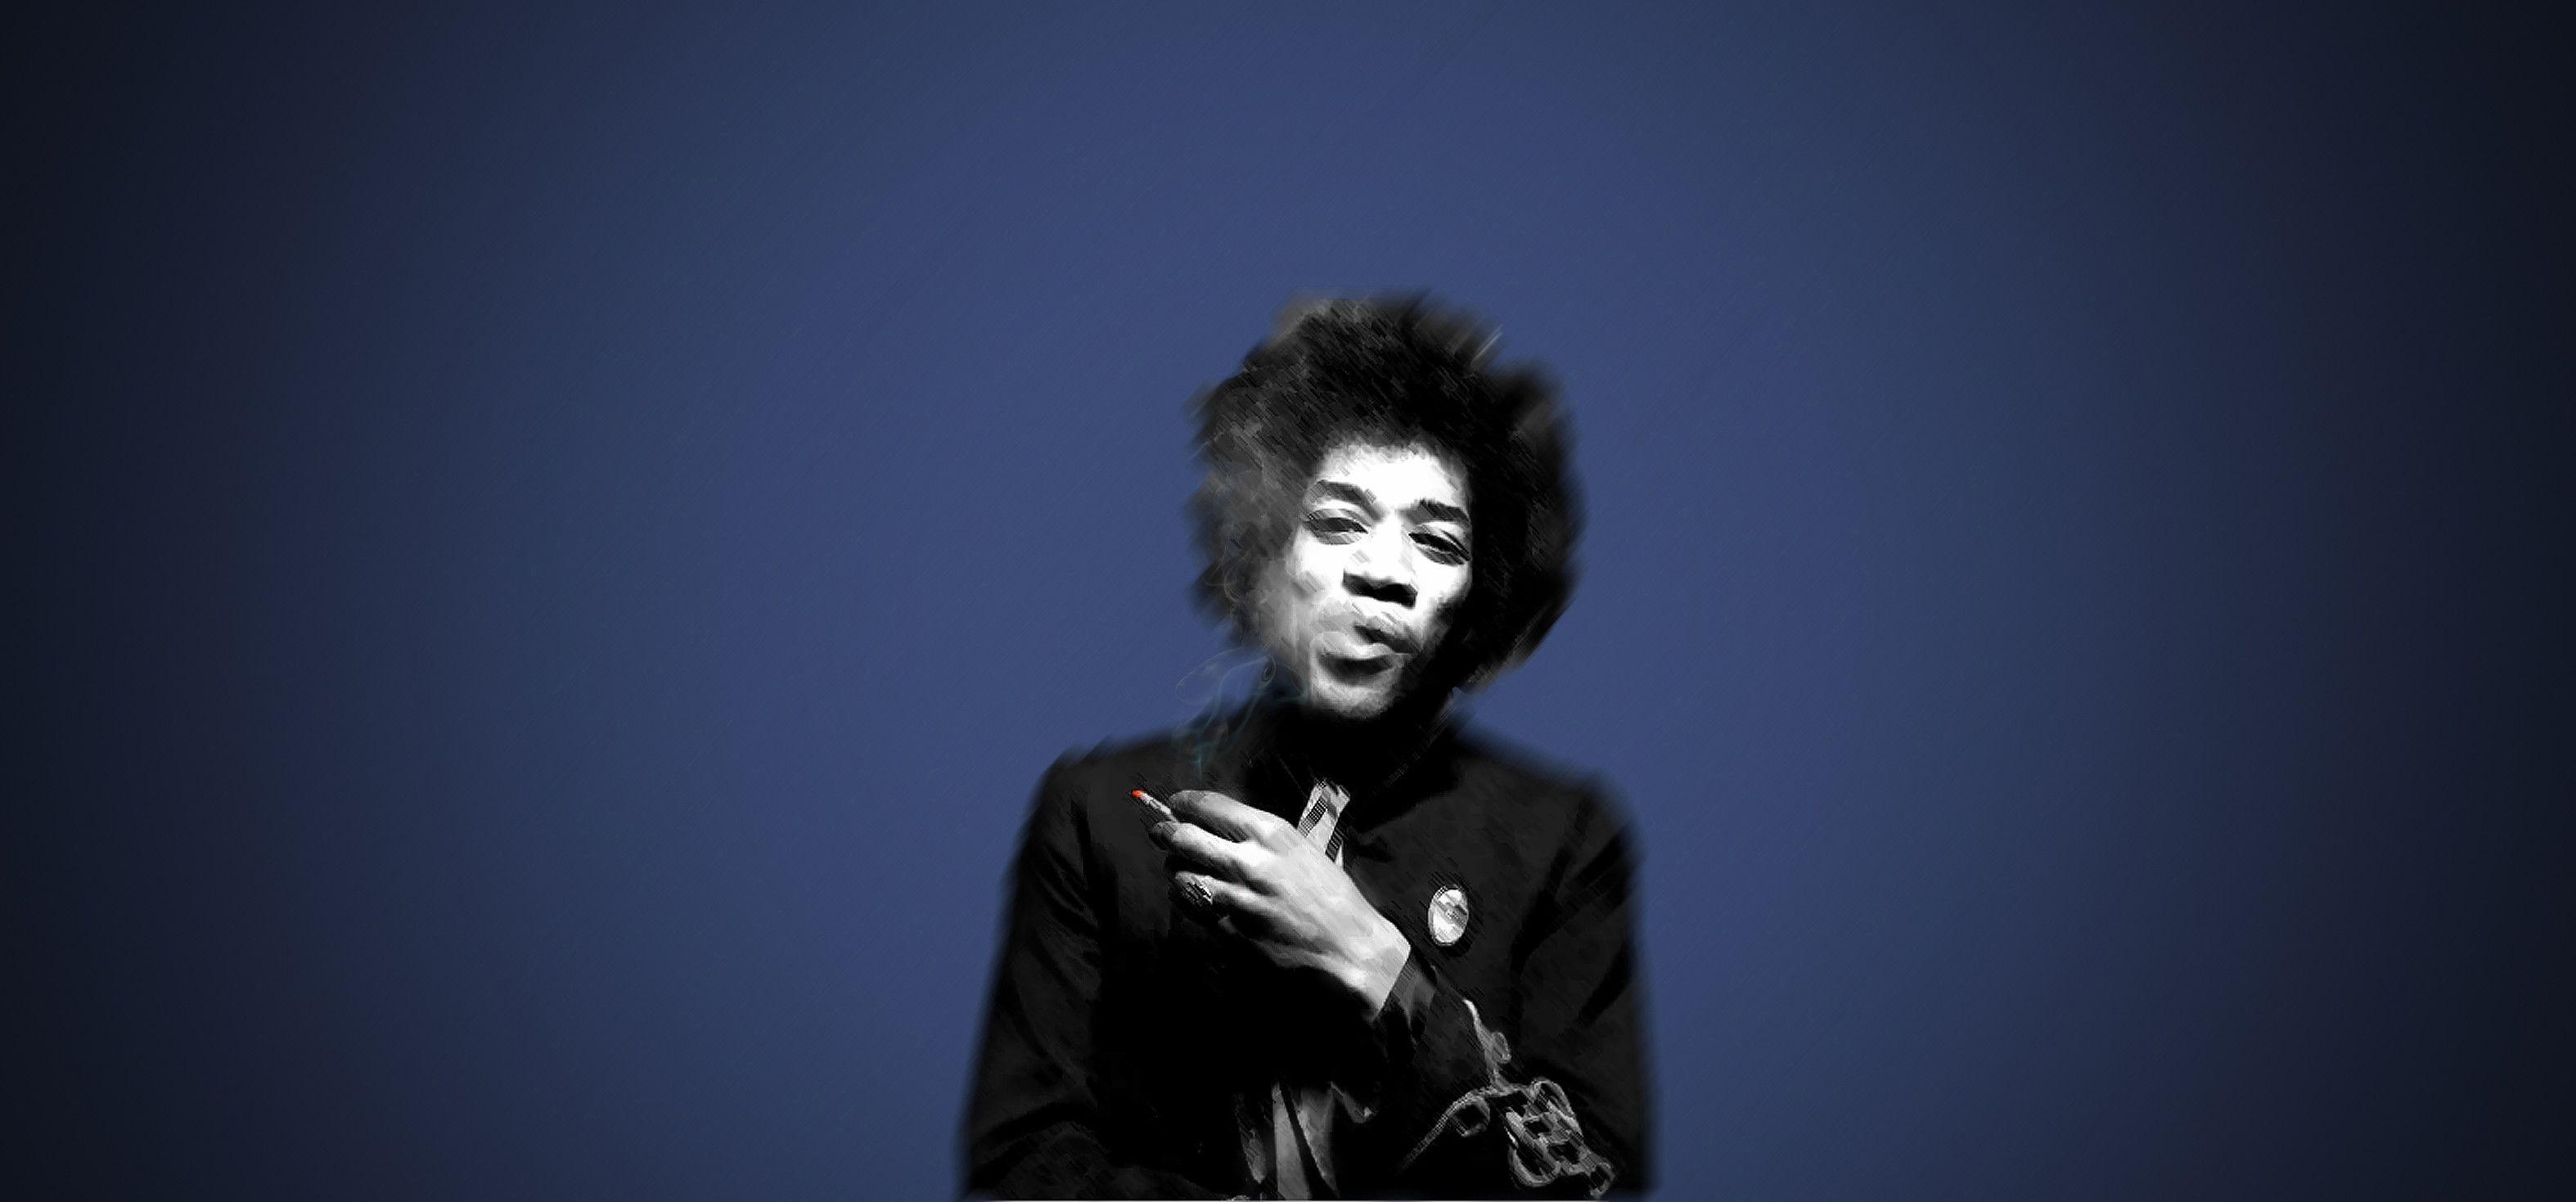 3148x1469 Jimi Hendrix Wallpaper 9